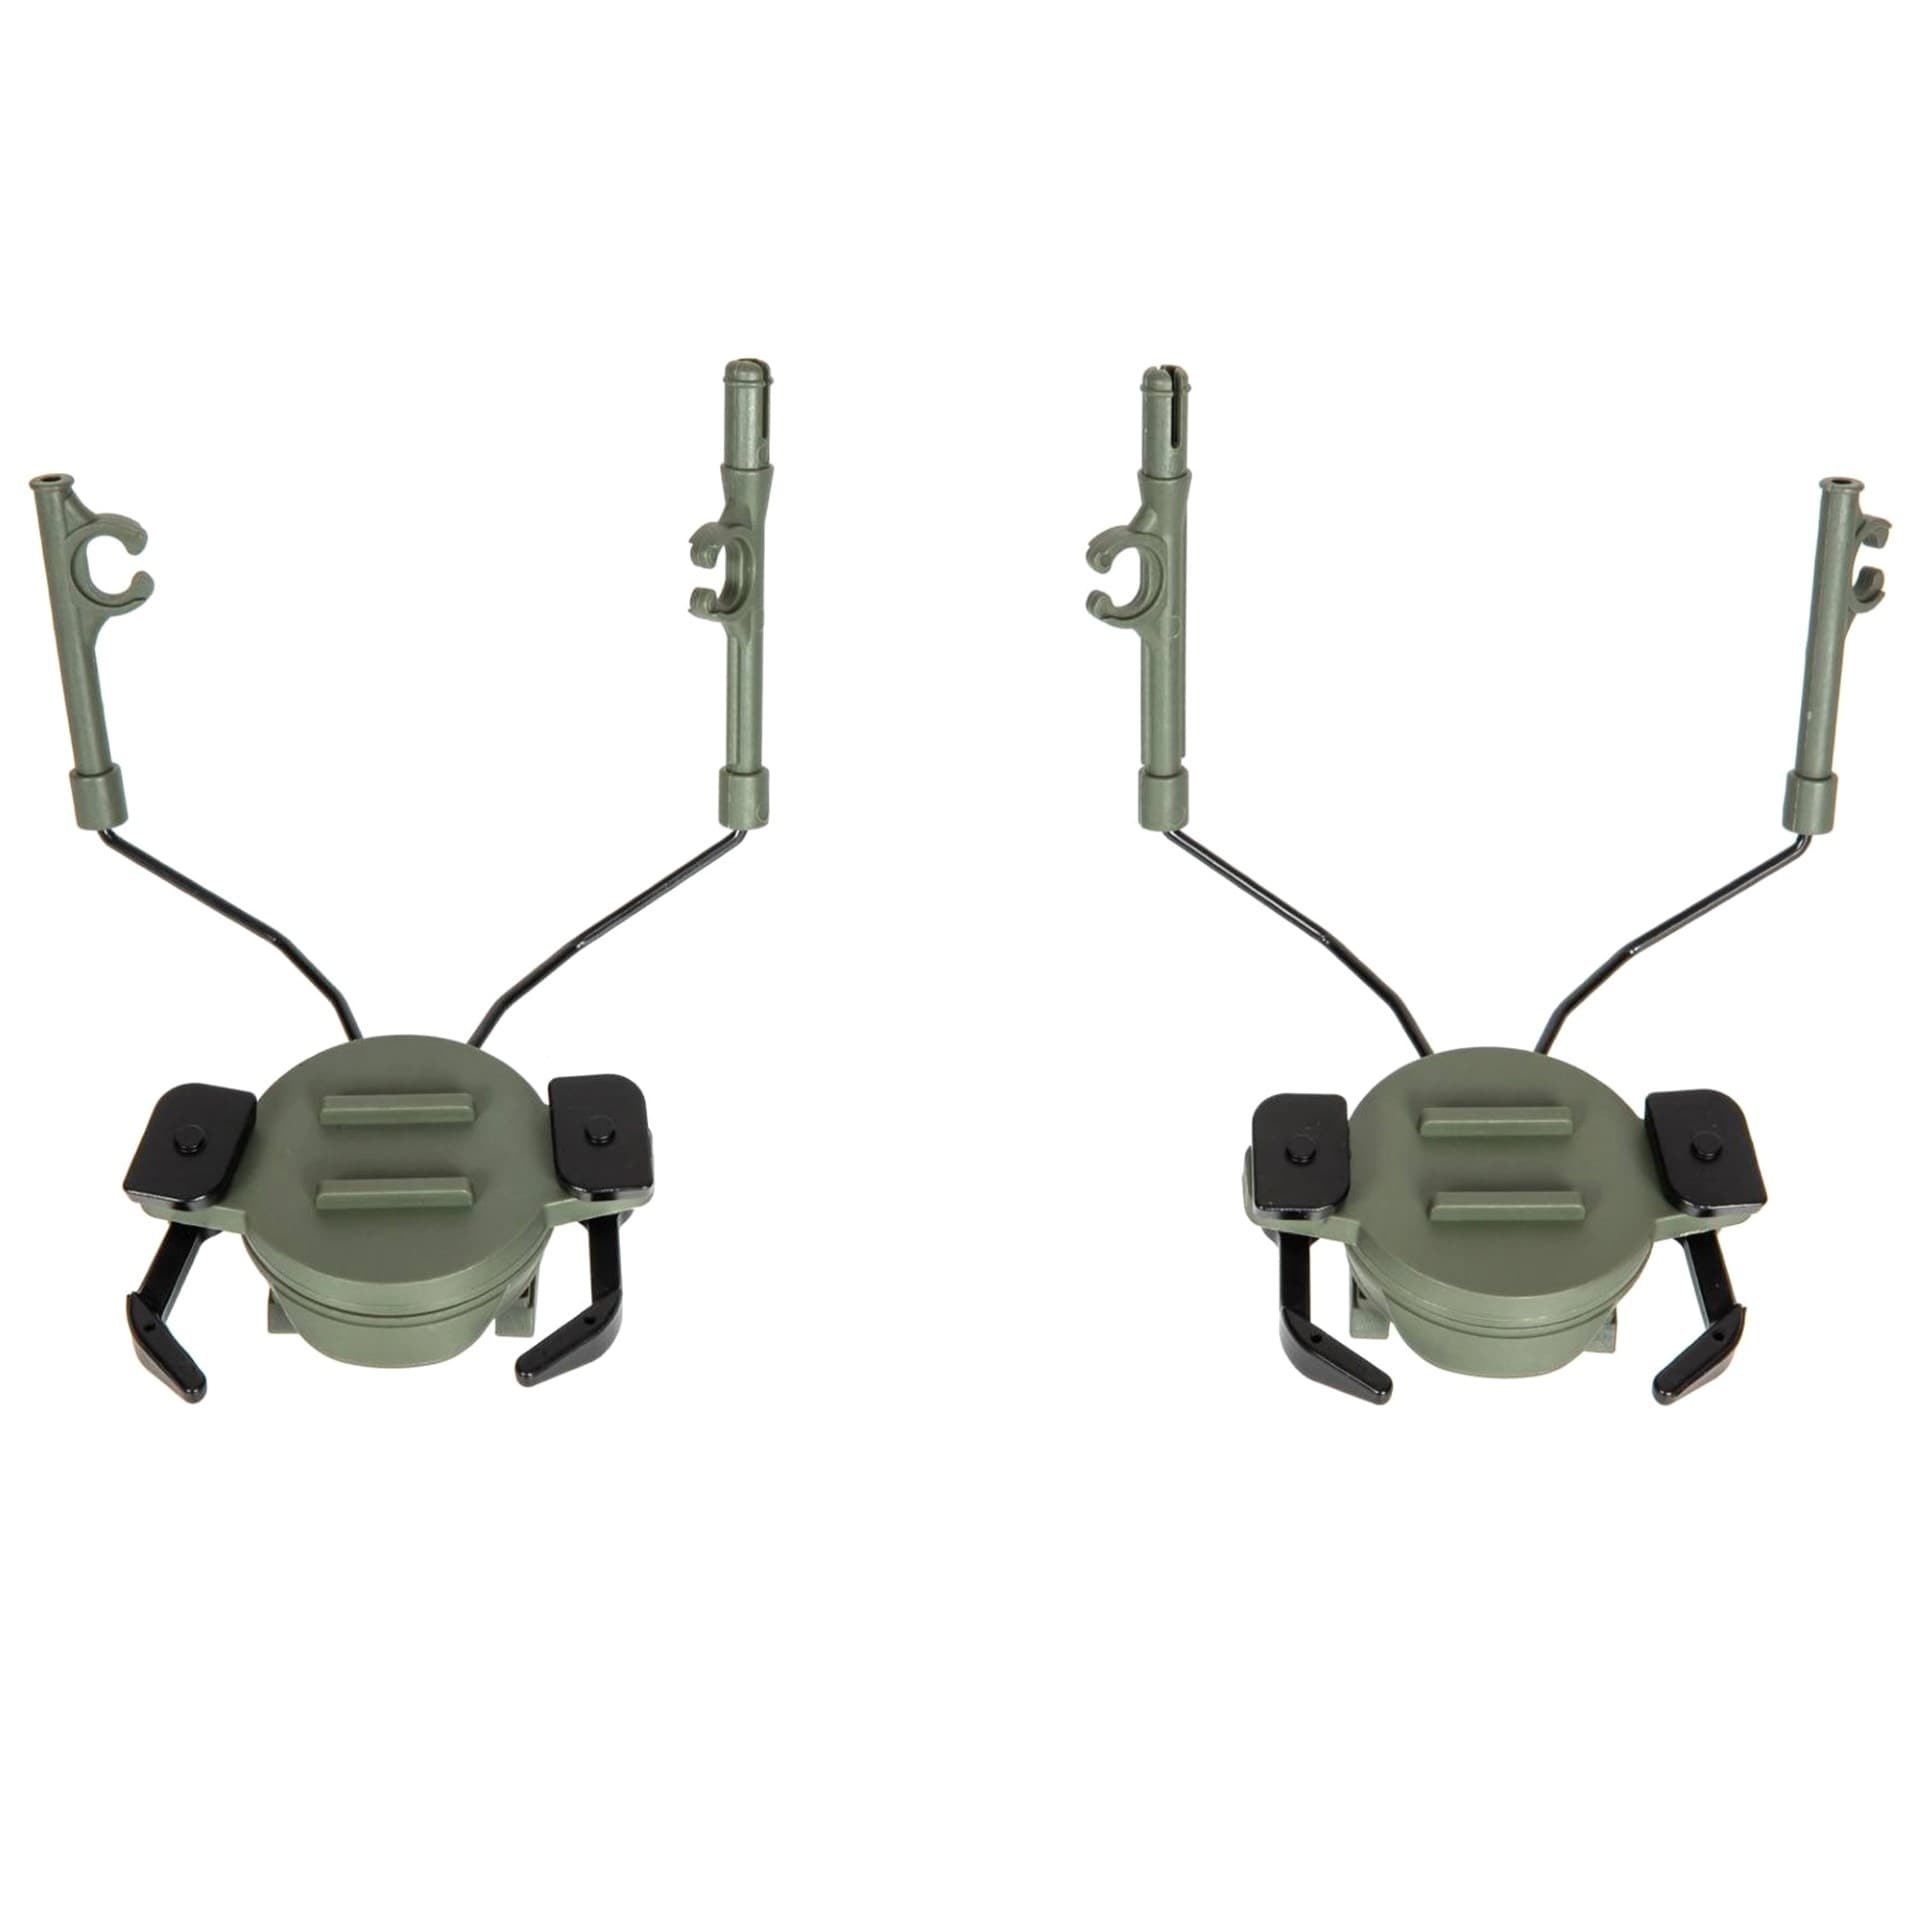 Montaż słuchawek Specna Arms do hełmów typu FAST / Ops-Core - Olive